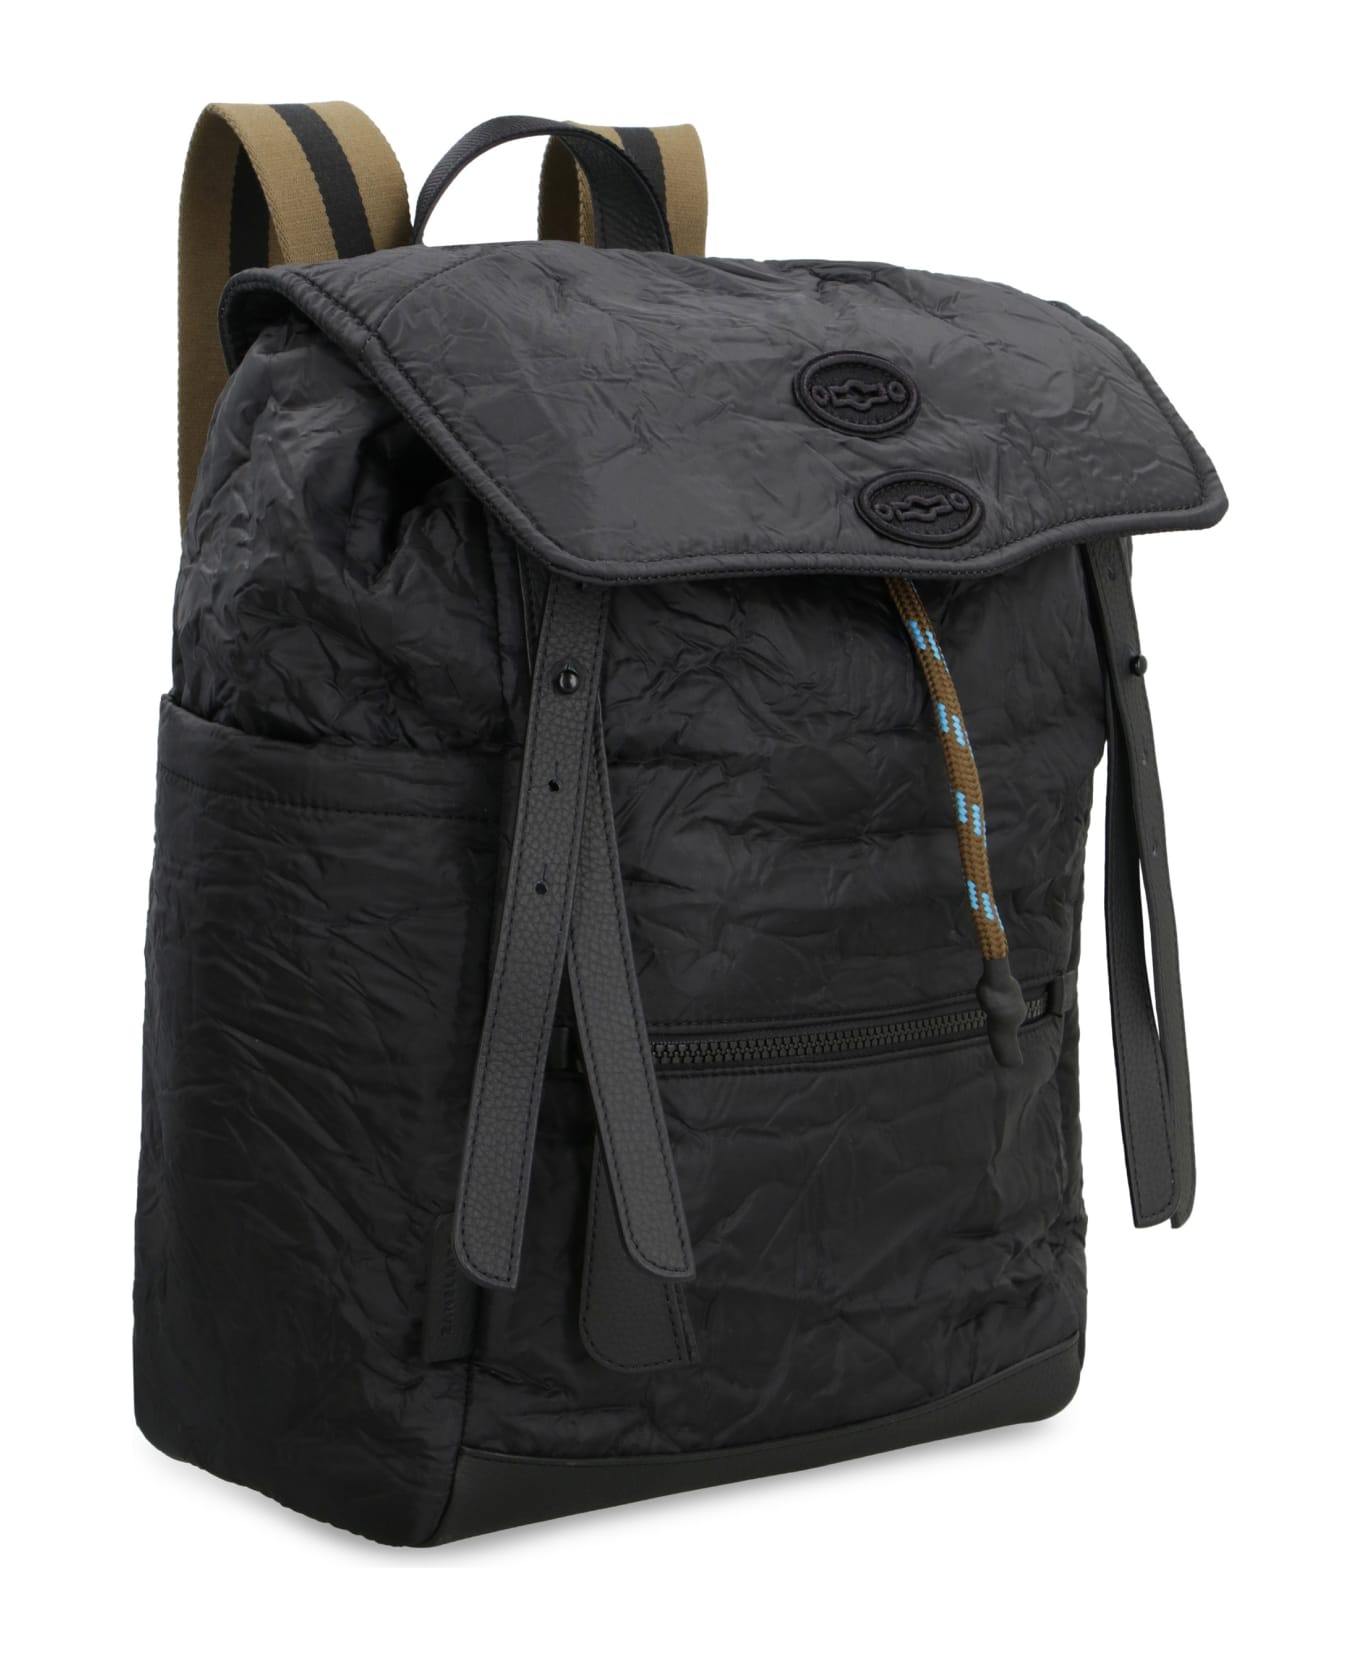 Zanellato Milo Technical Fabric Backpack - black